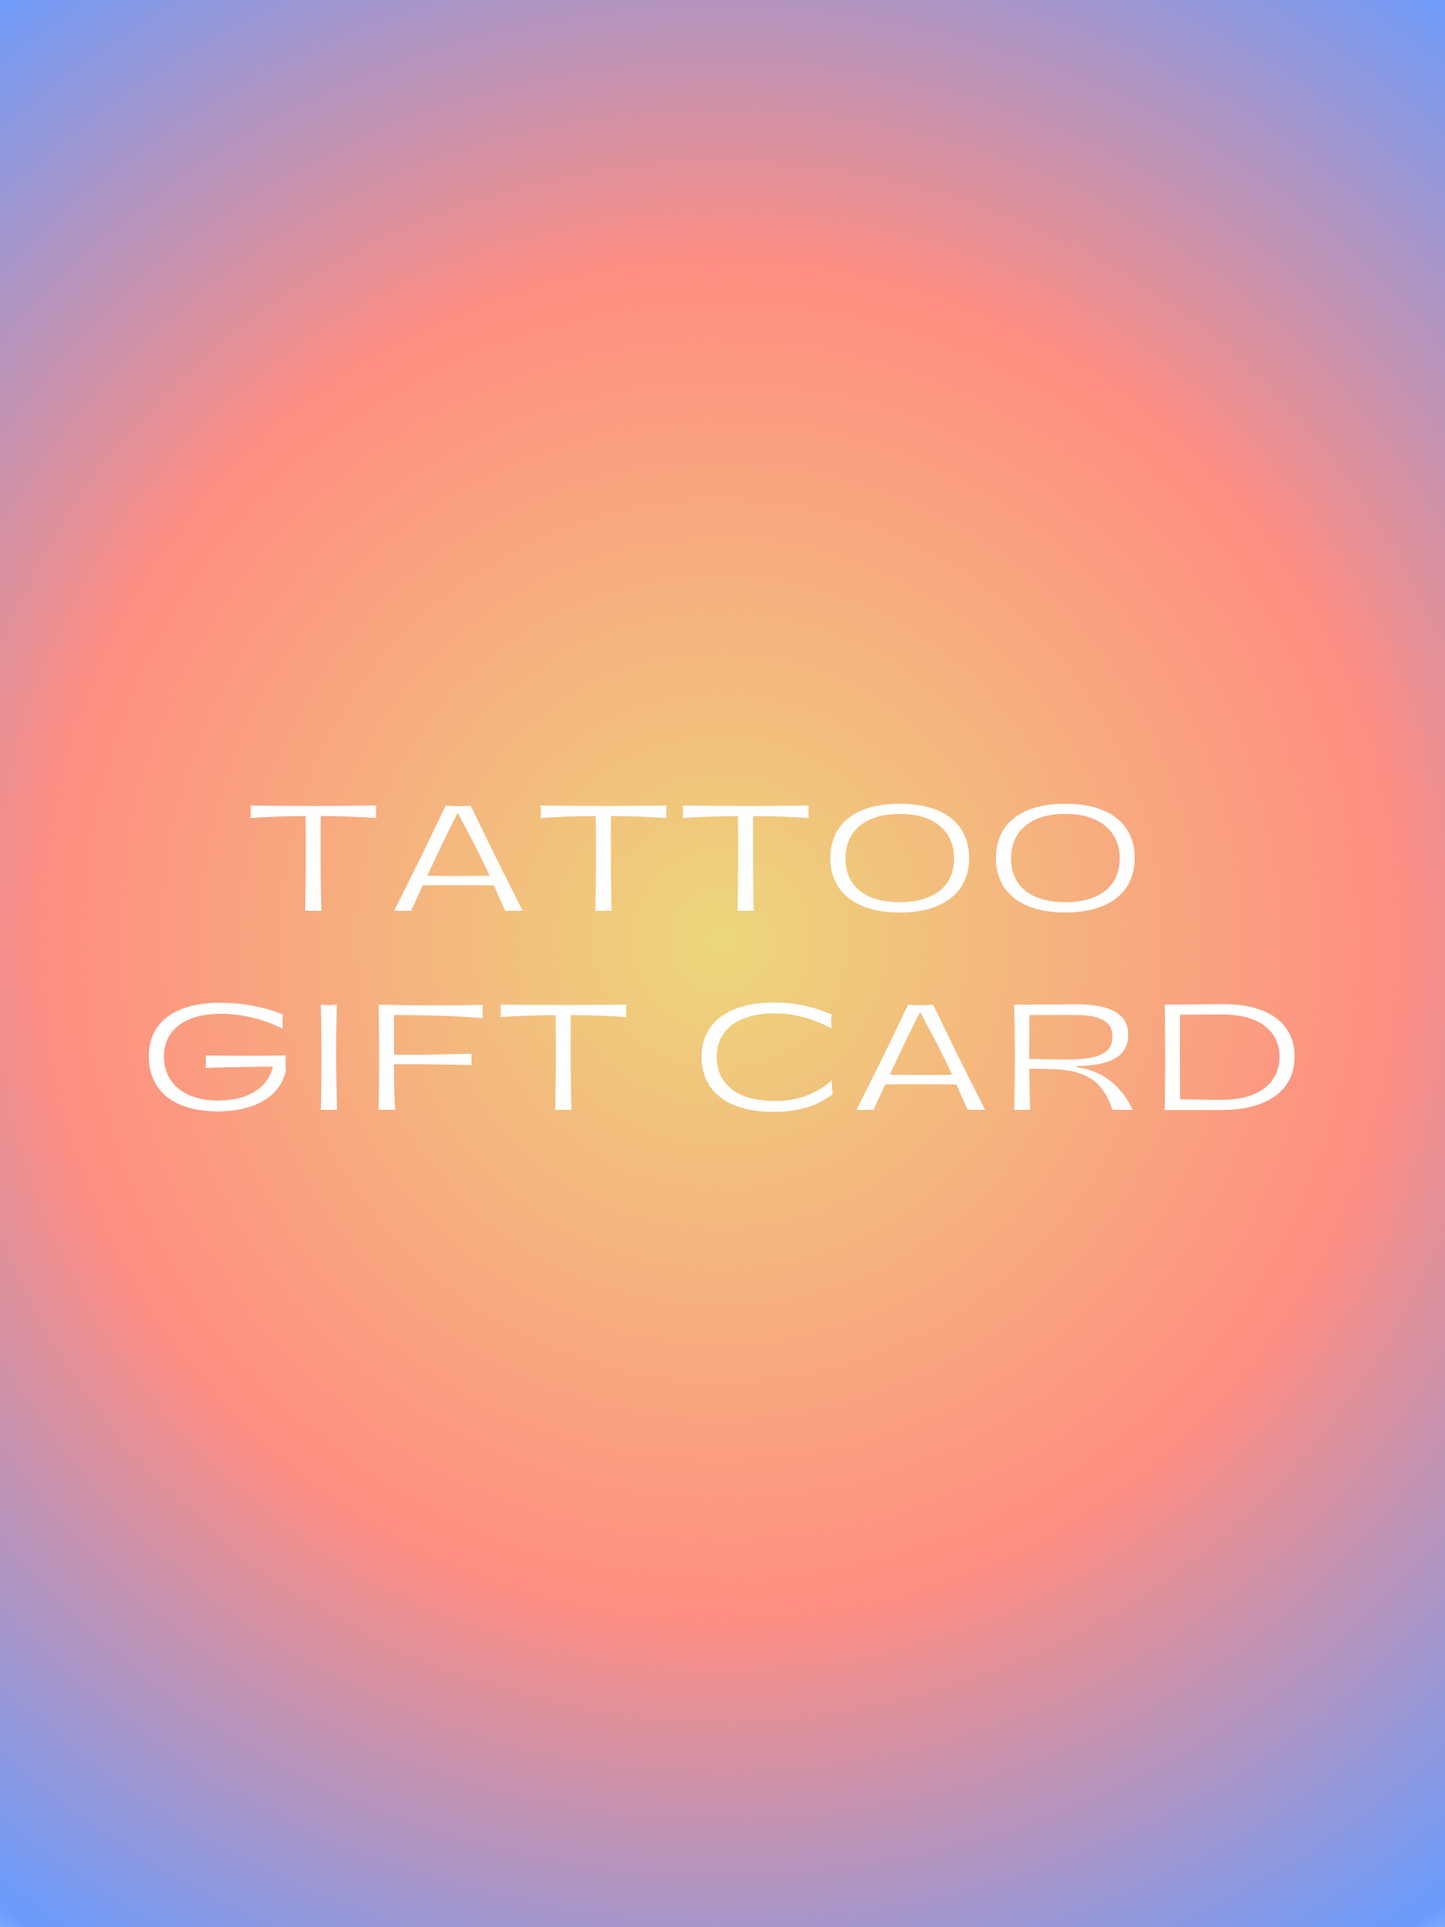 Tattoo gift card